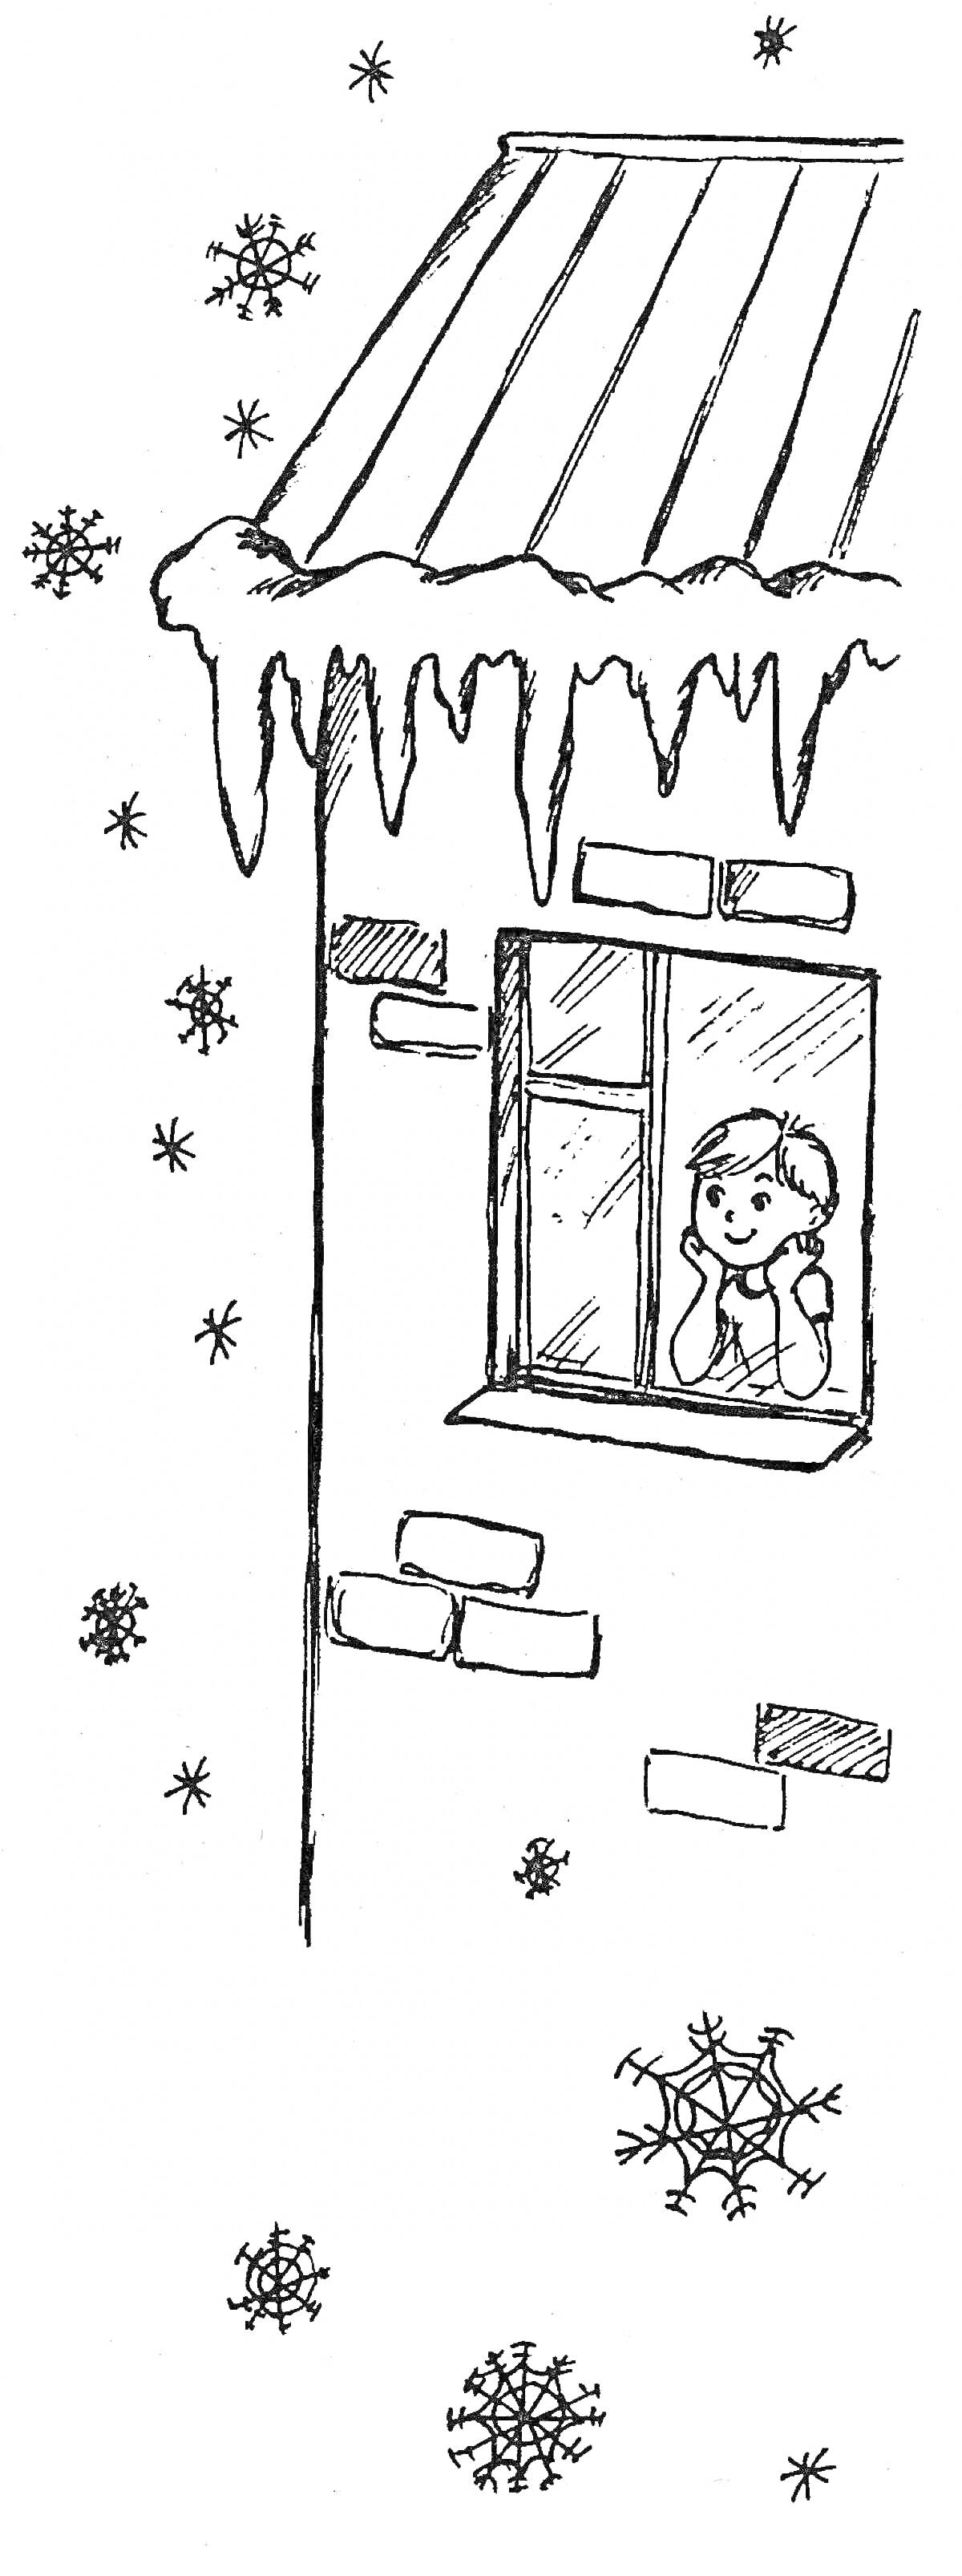 Раскраска Мальчик в зимней шапке смотрит в окно дома, крыша которого покрыта снежными накромождениям и сосульками, в окружении падающих снежинок